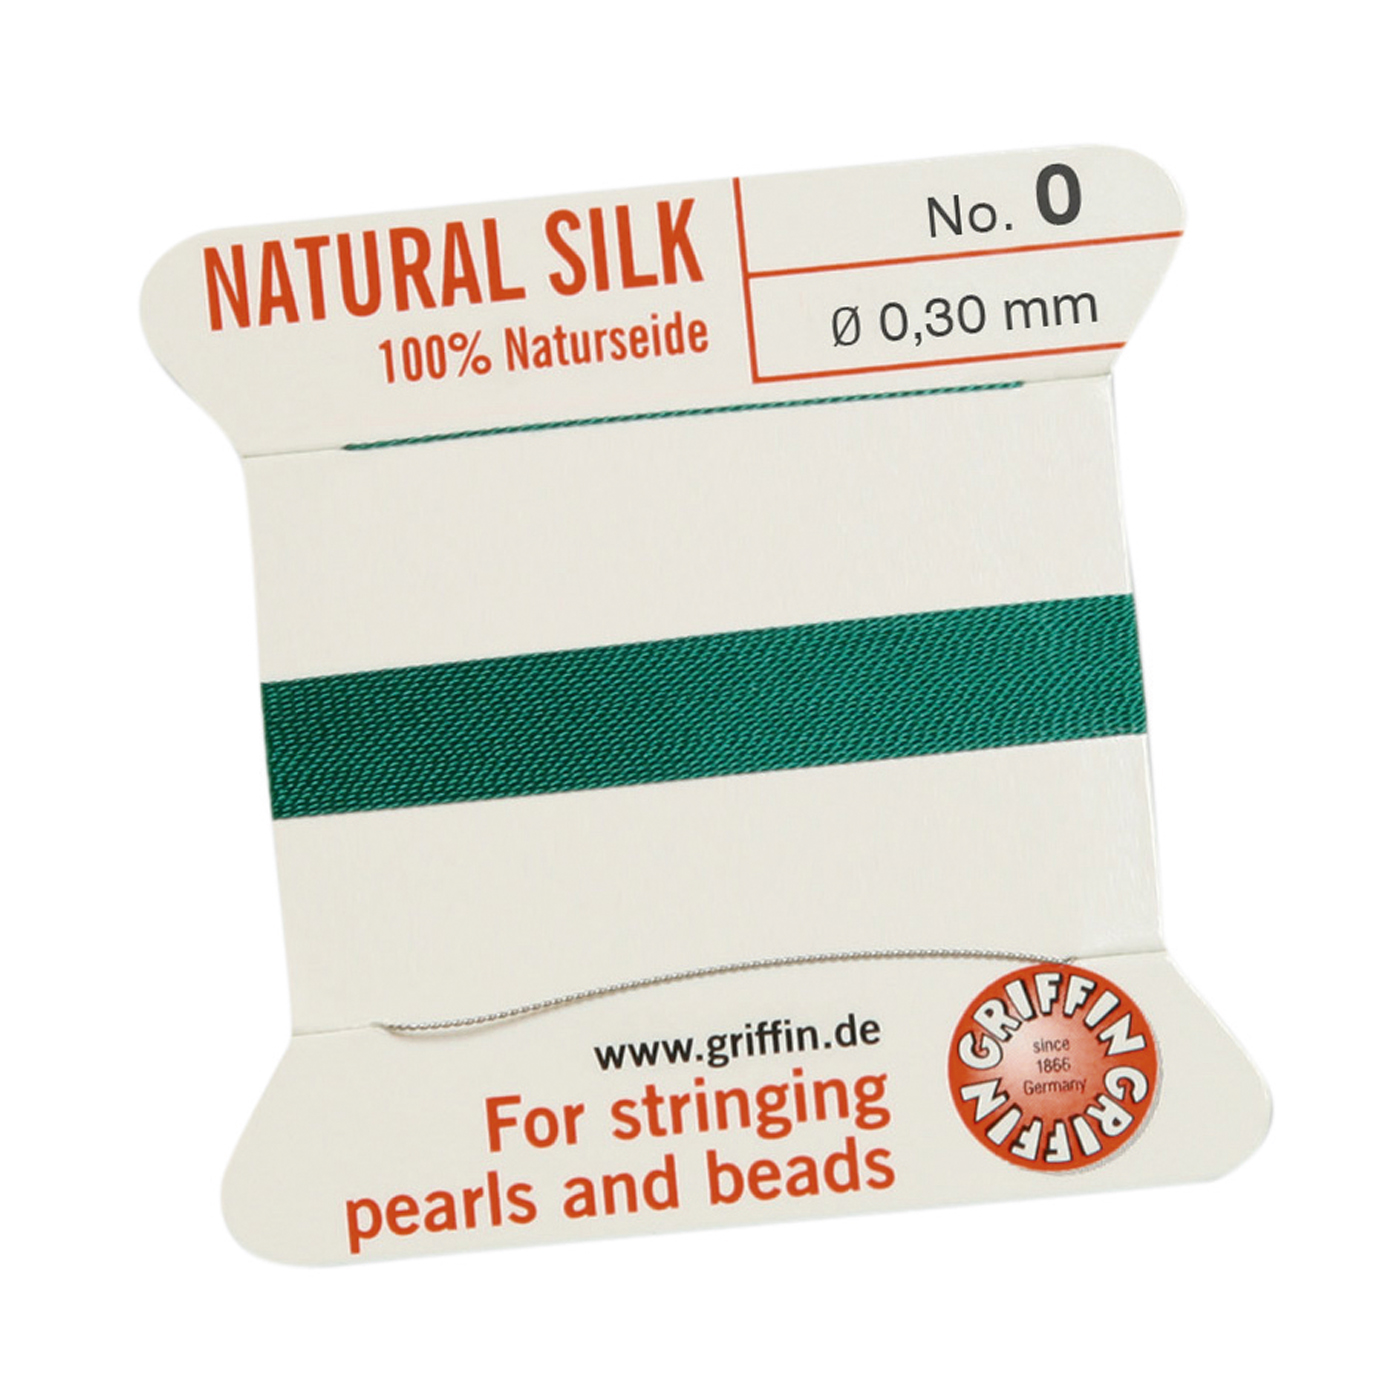 Bead Cord 100% Natural Silk, Green, No. 0 - 2 m